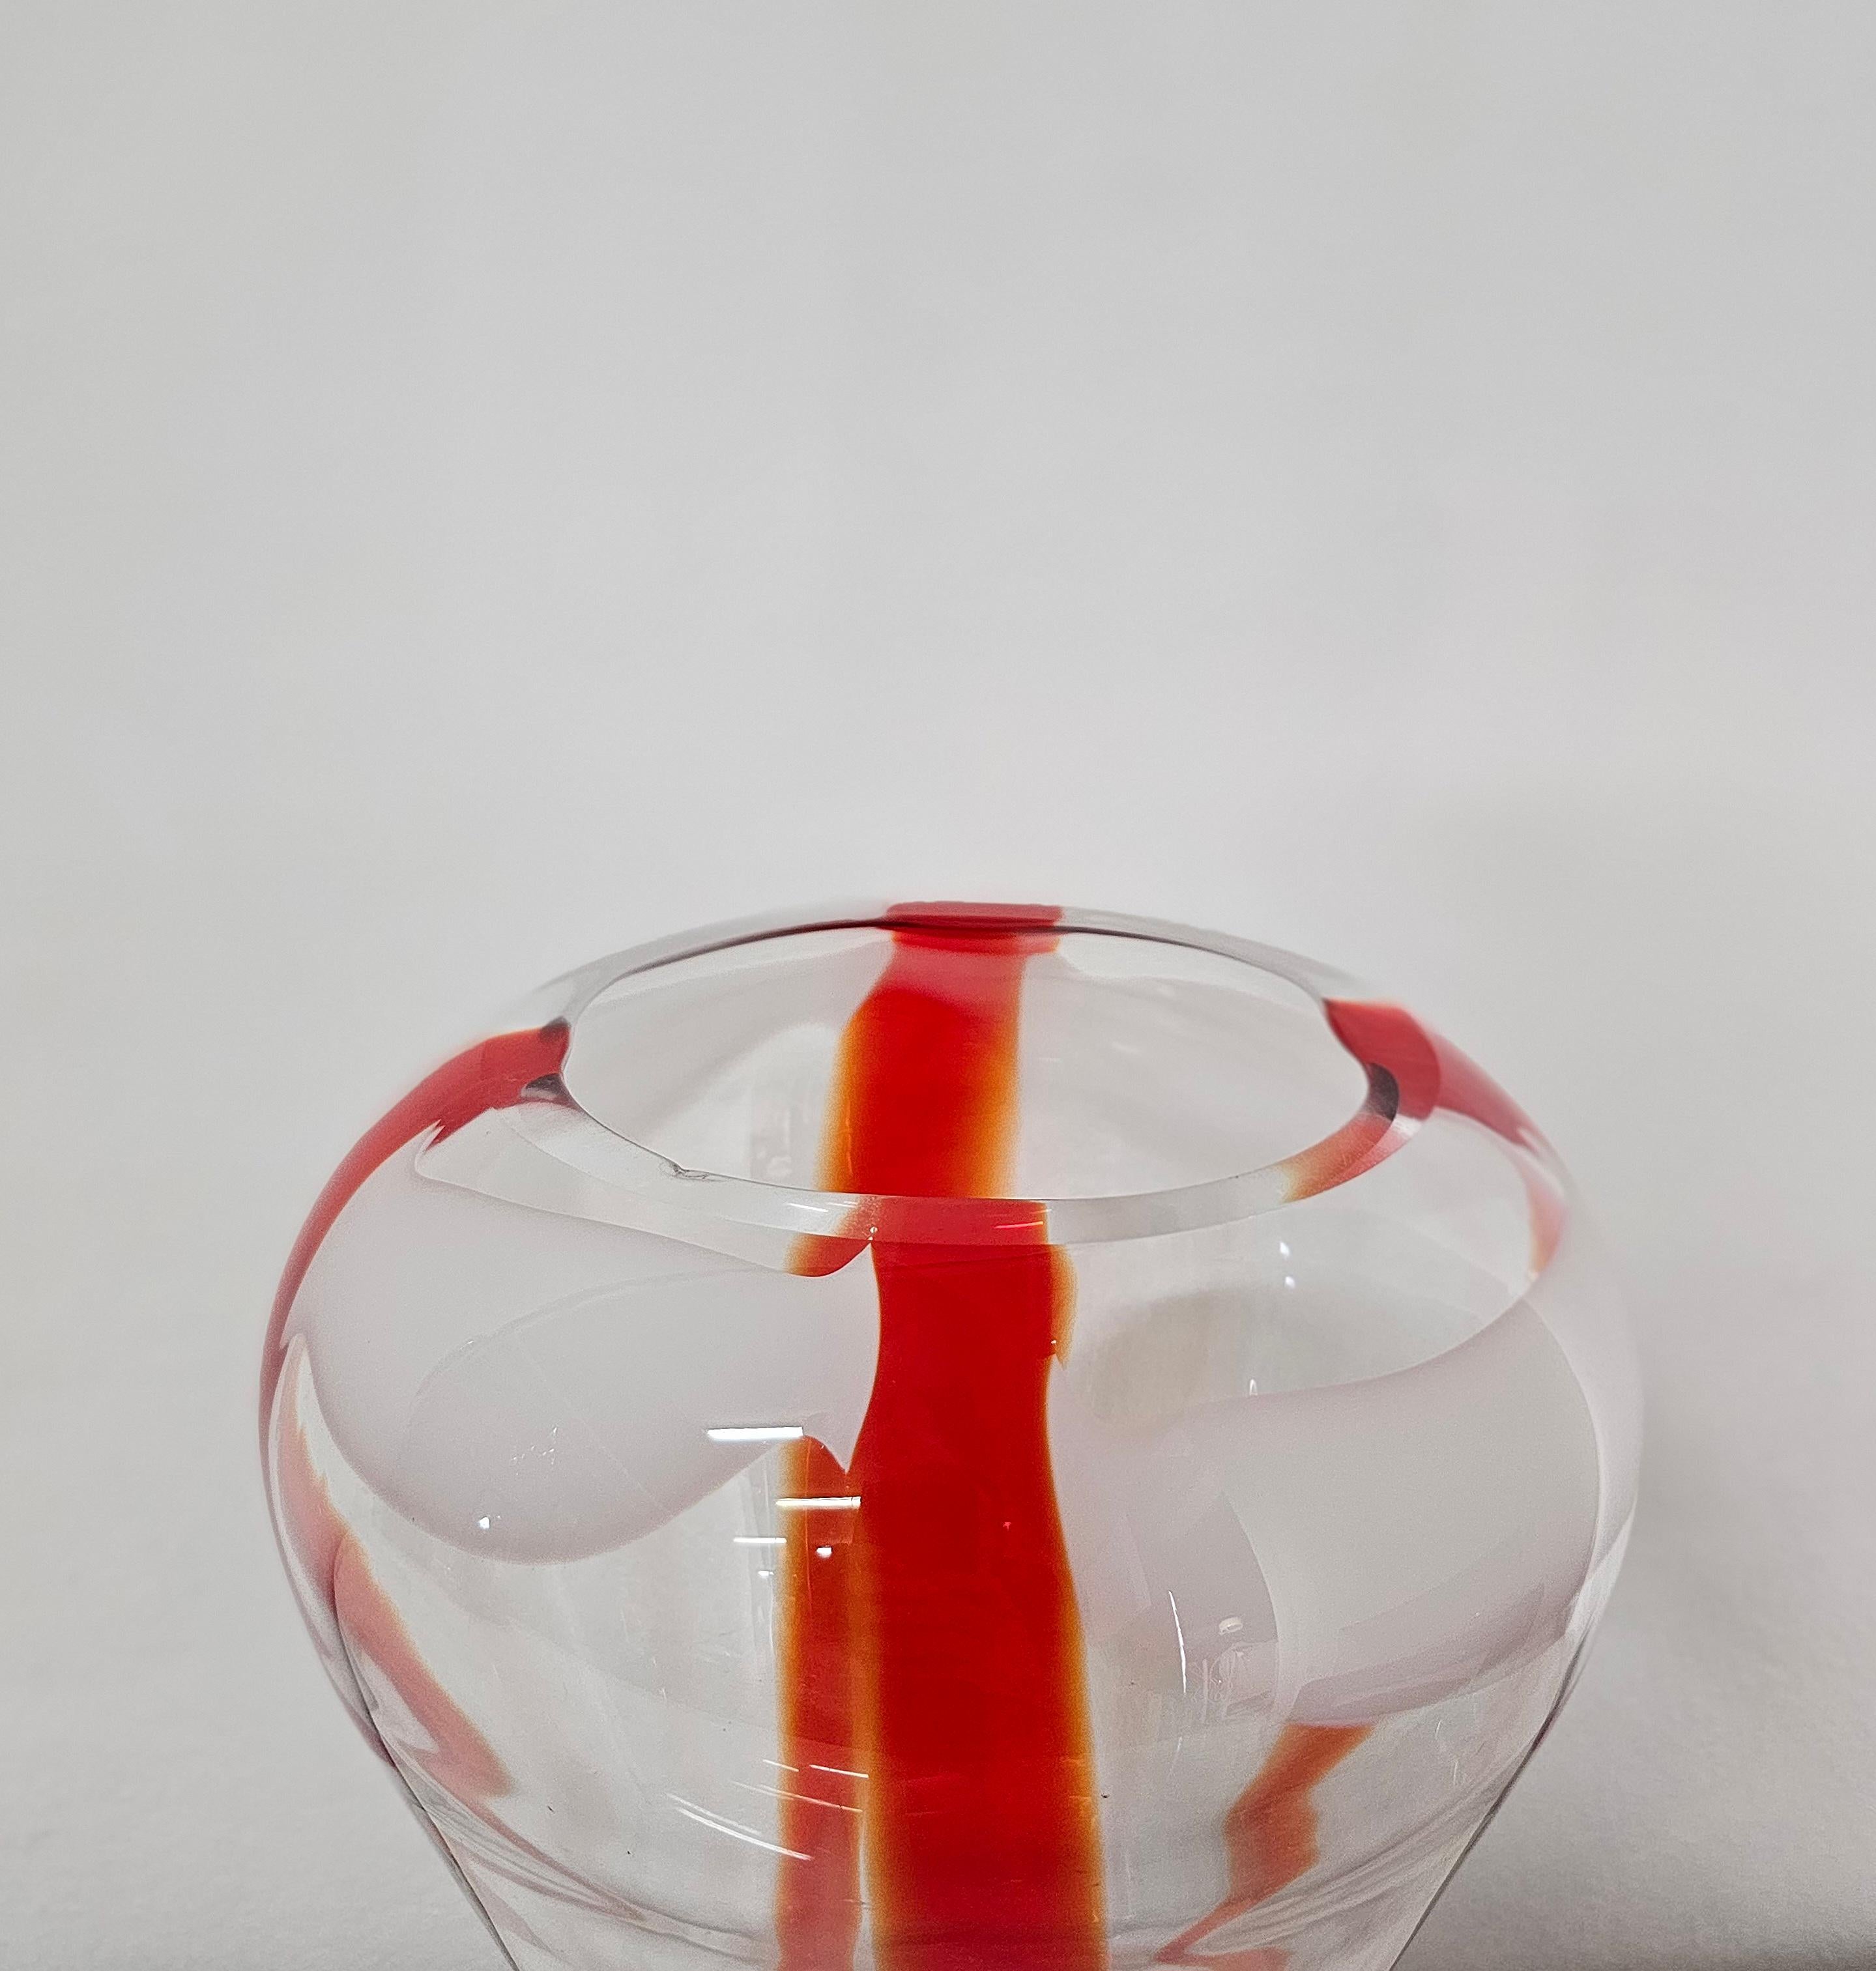 Decorative Object Vase Guzzini Murano Glass Midcentury Italian Design 1970s For Sale 7